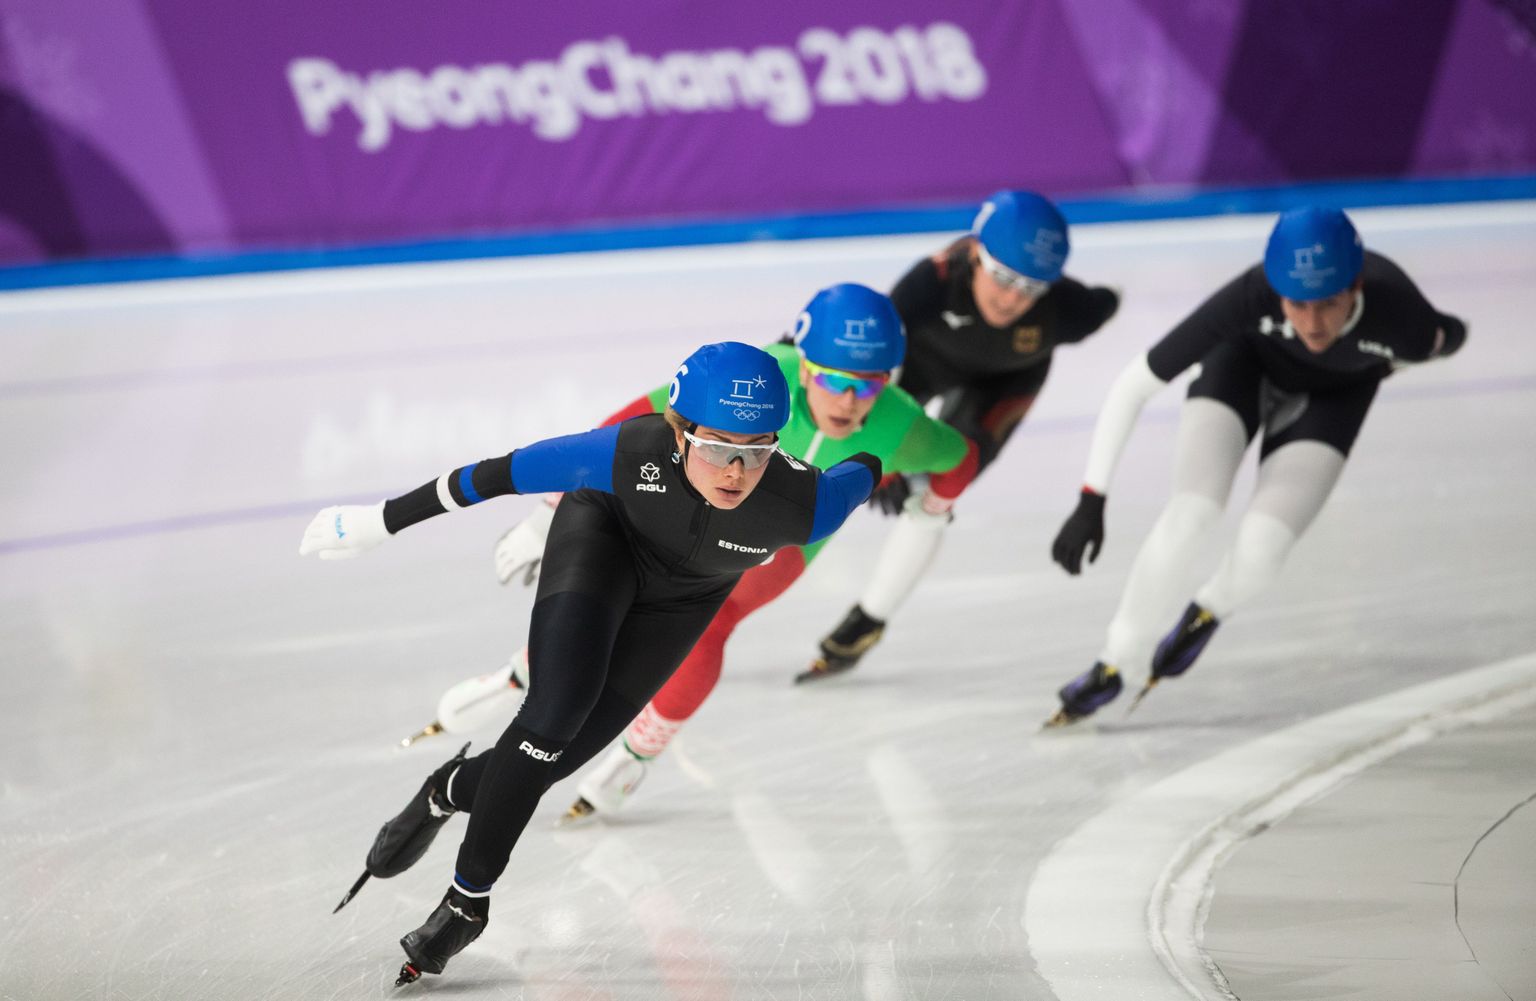 Saskia Alusalu kõige suuremaks saavutuseks jäi 2018. aasta Pyeongchangi taliolümpiamängudel ühisstardis saavutatud neljas koht.